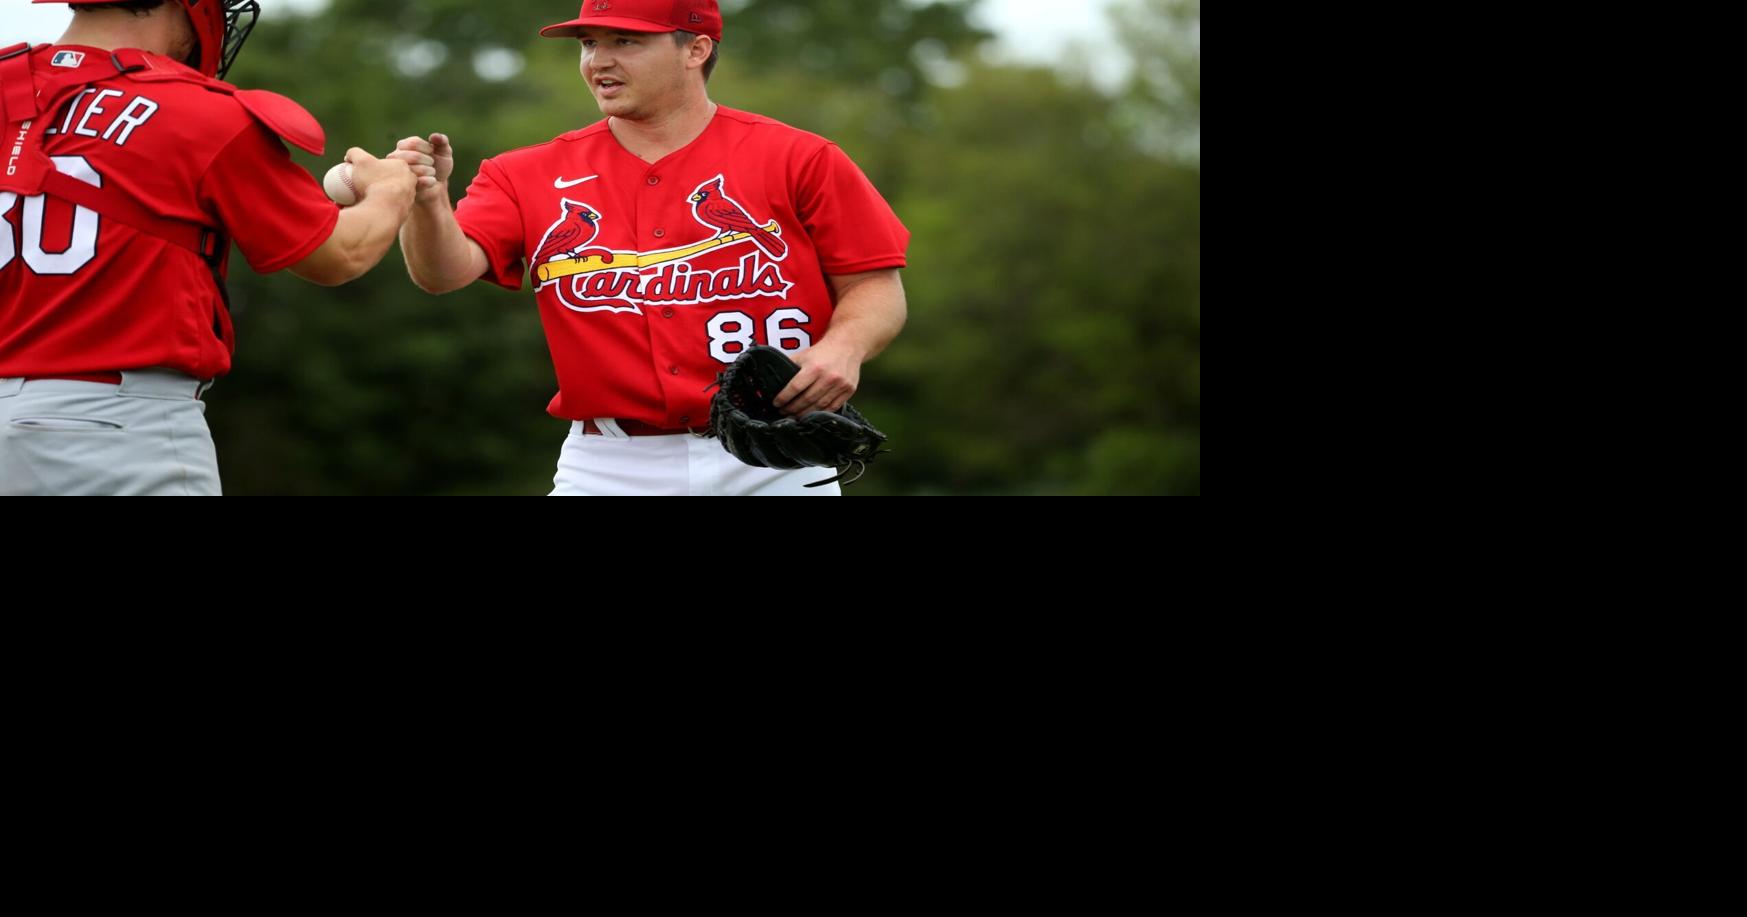 St. Louis Cardinals Road Uniform - National League (NL) - Chris